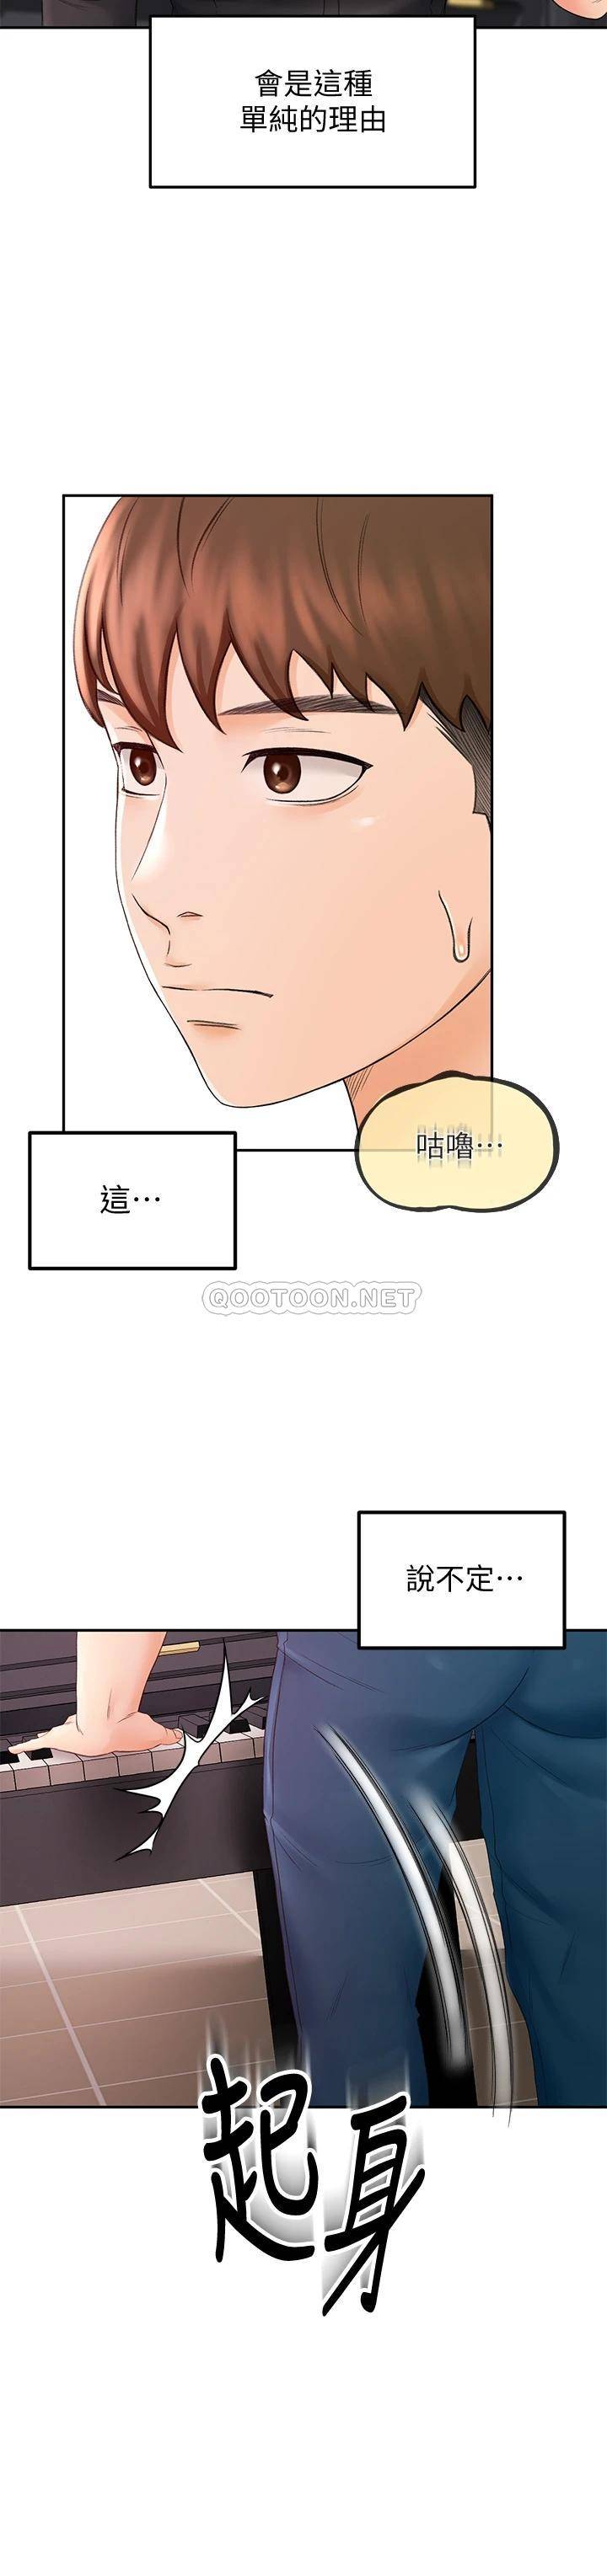 韩国污漫画 劍道學姐 第11话 跟老师的激烈性爱 38